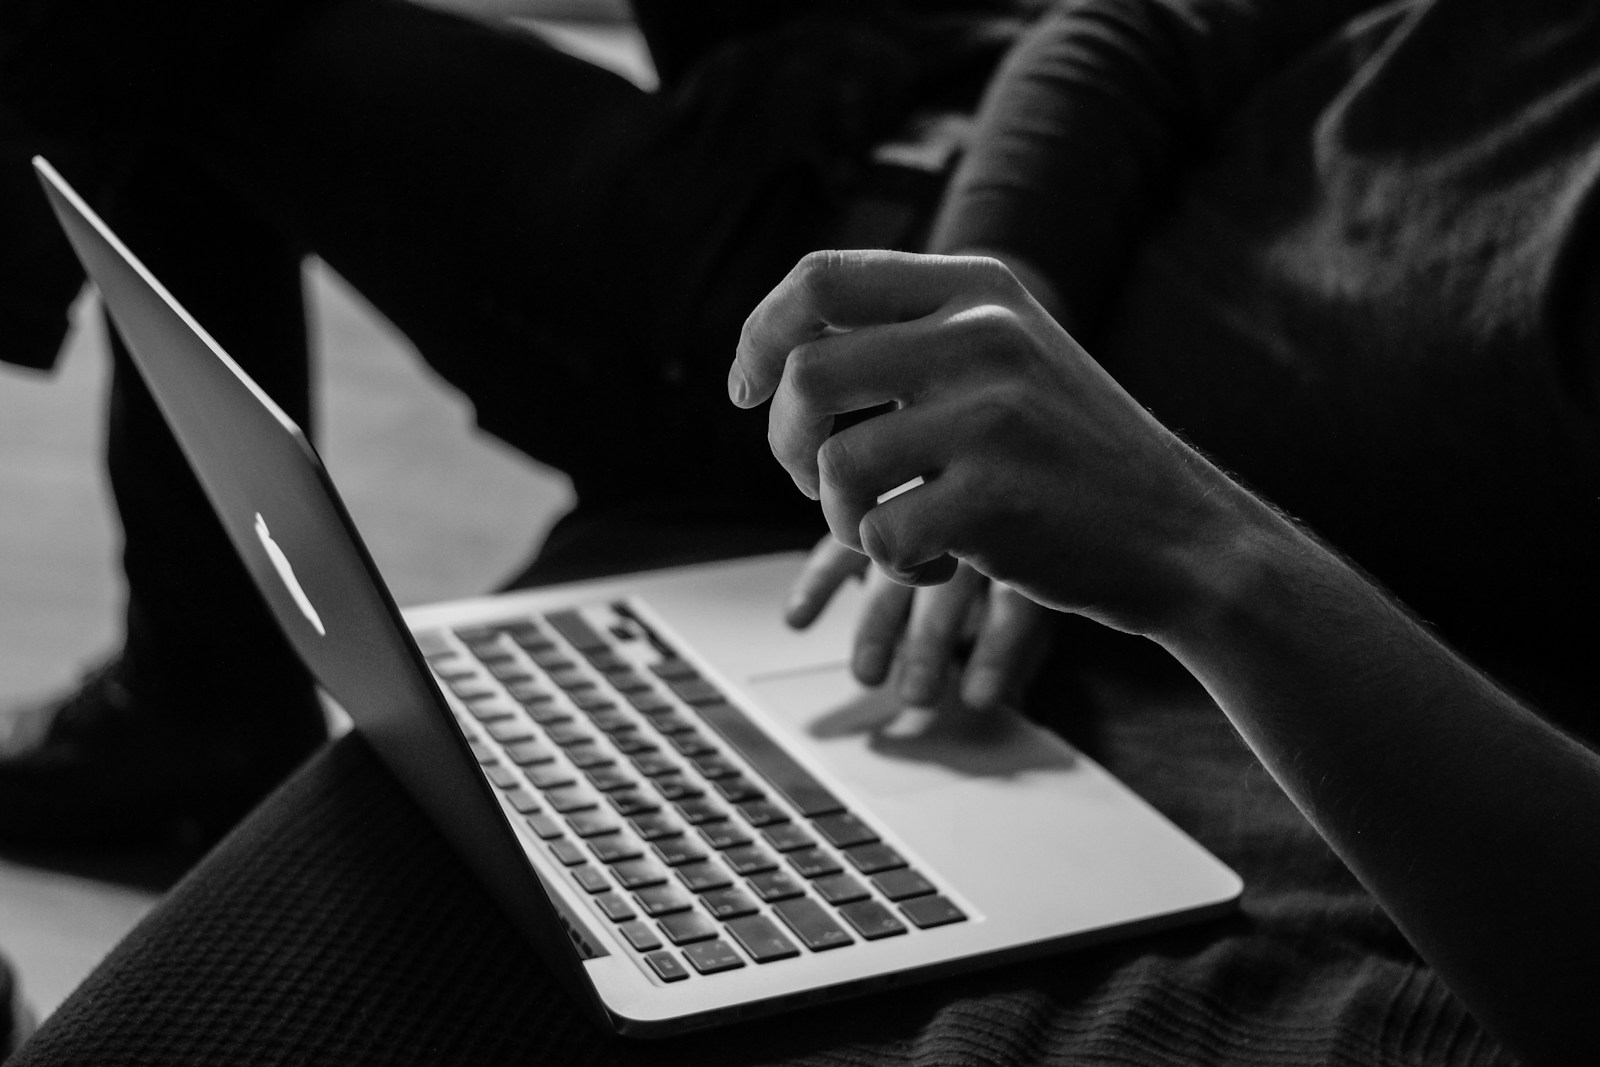 szaro-białe zdjęcie człowieka używającego laptopa